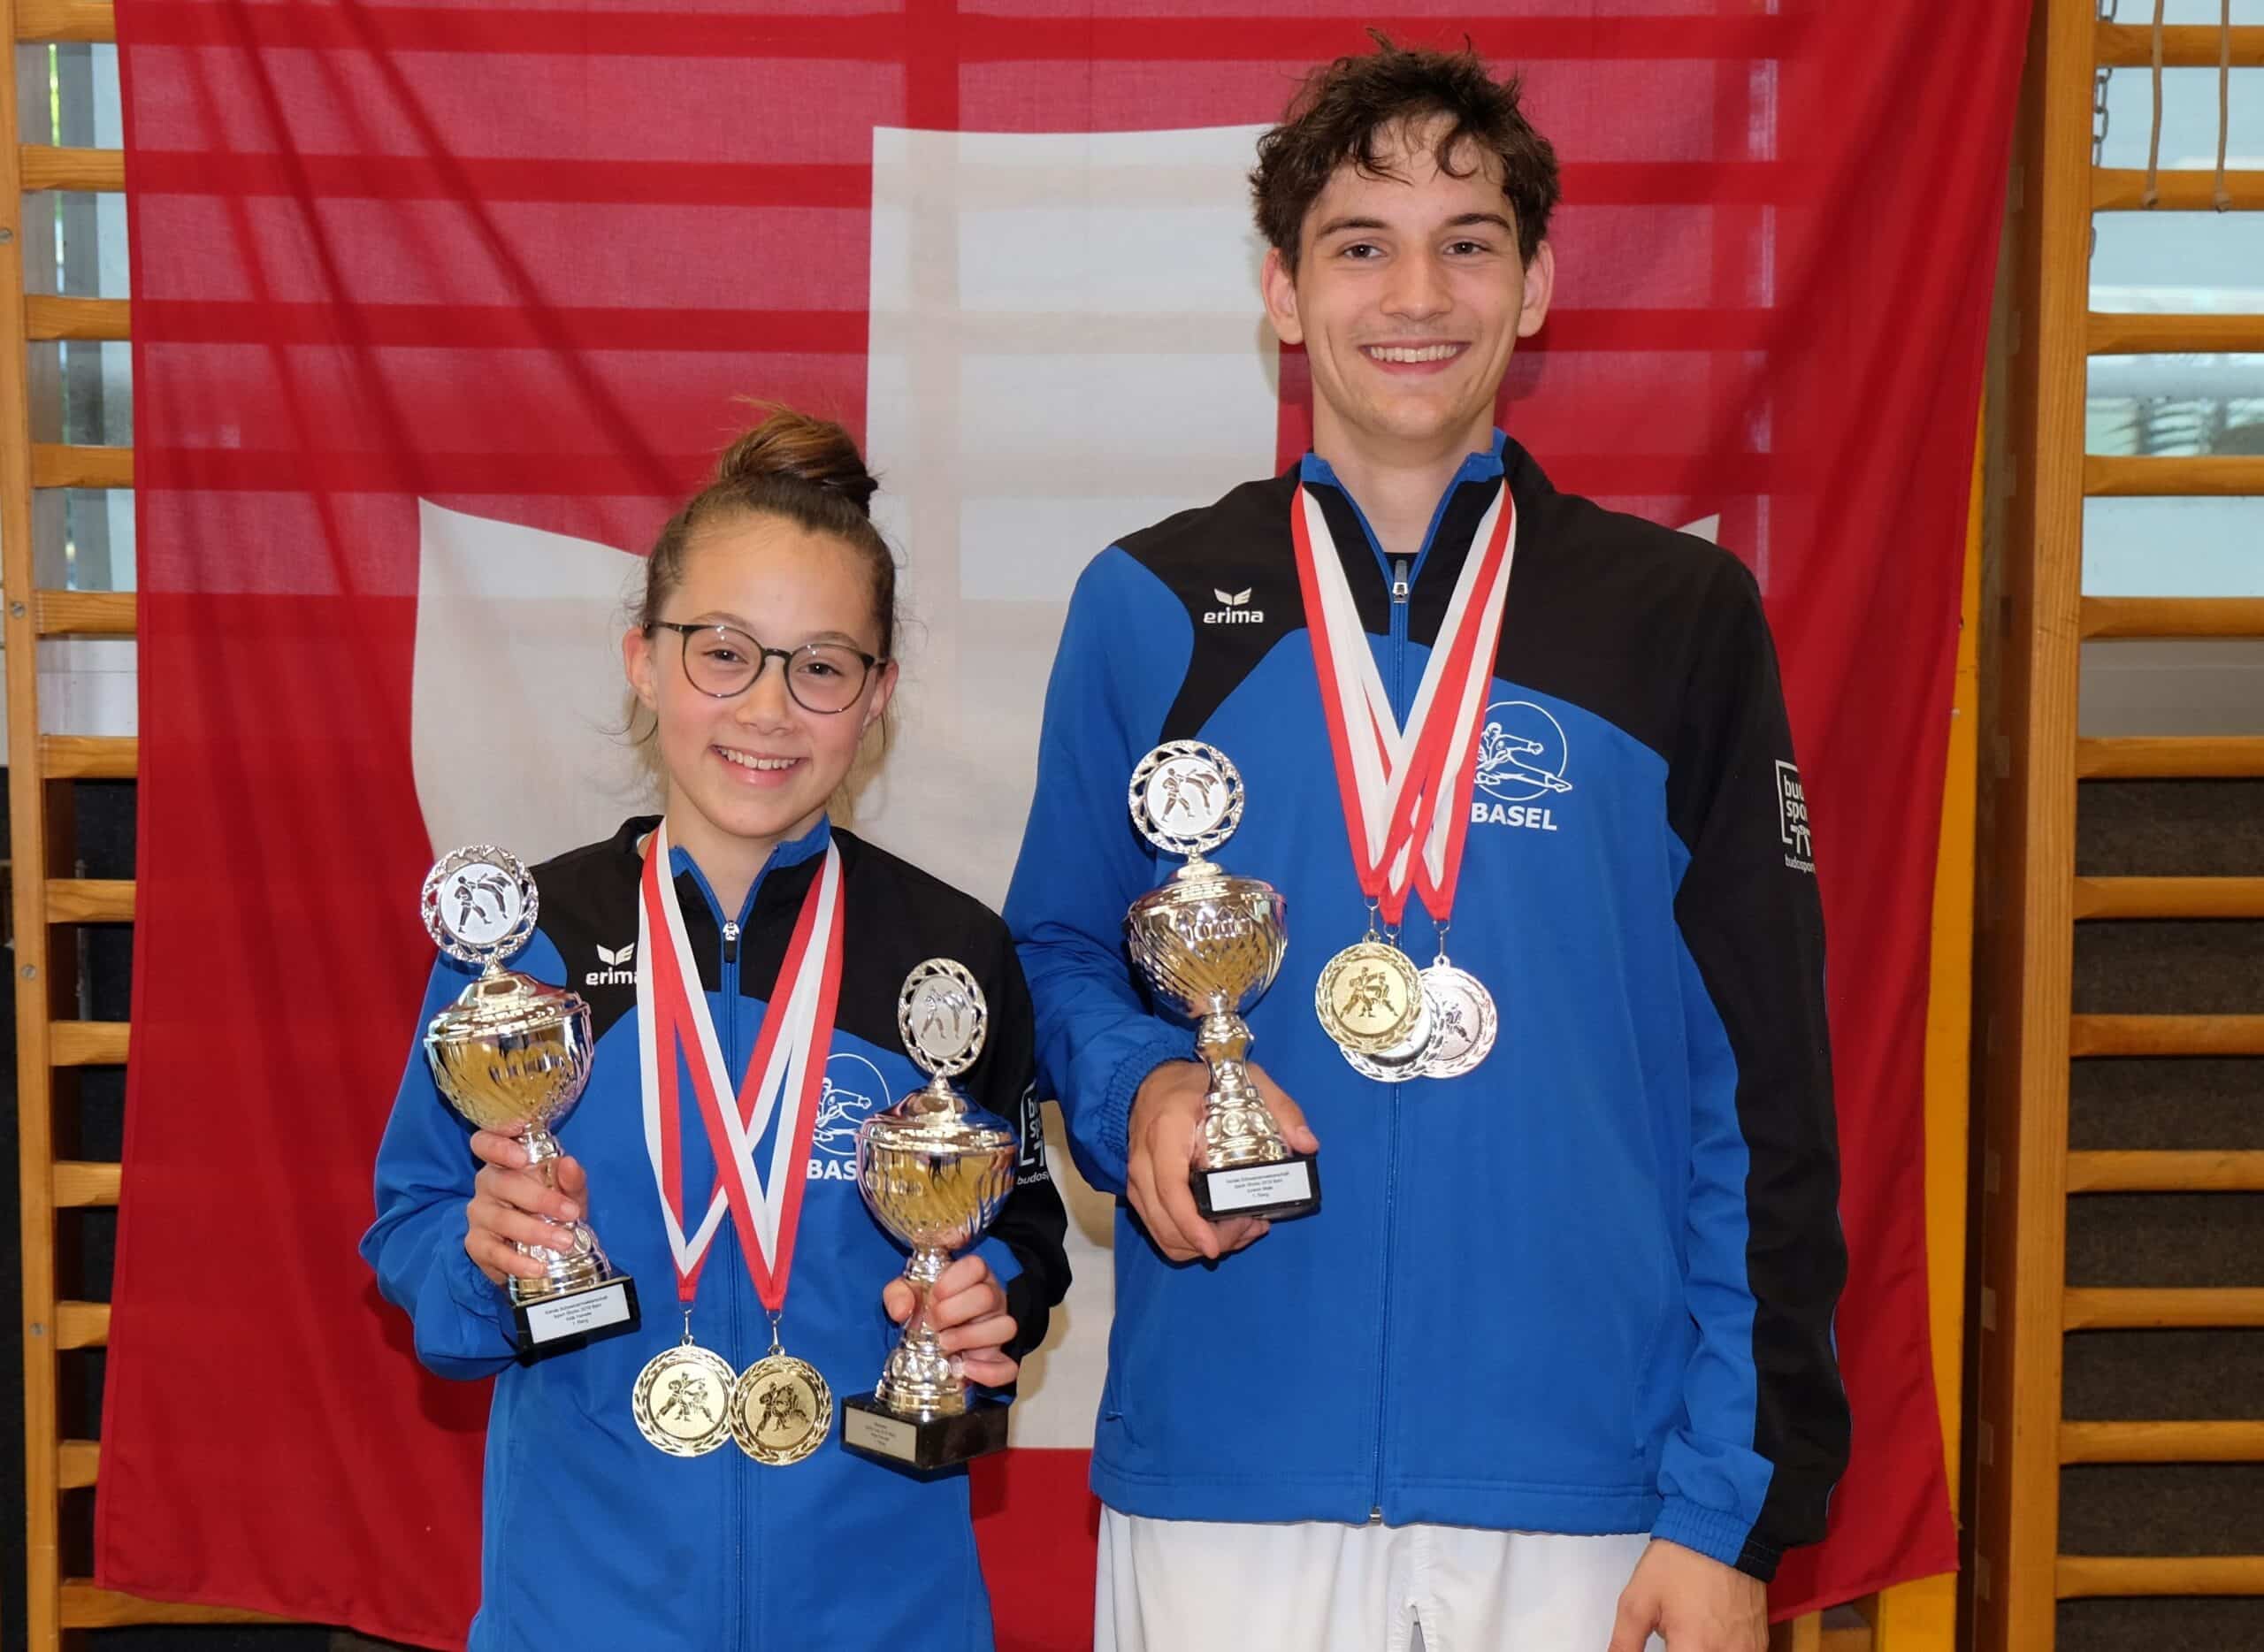 Karatekai Basel - Zwei Schweizermeistertitel für den Karatekai Basel